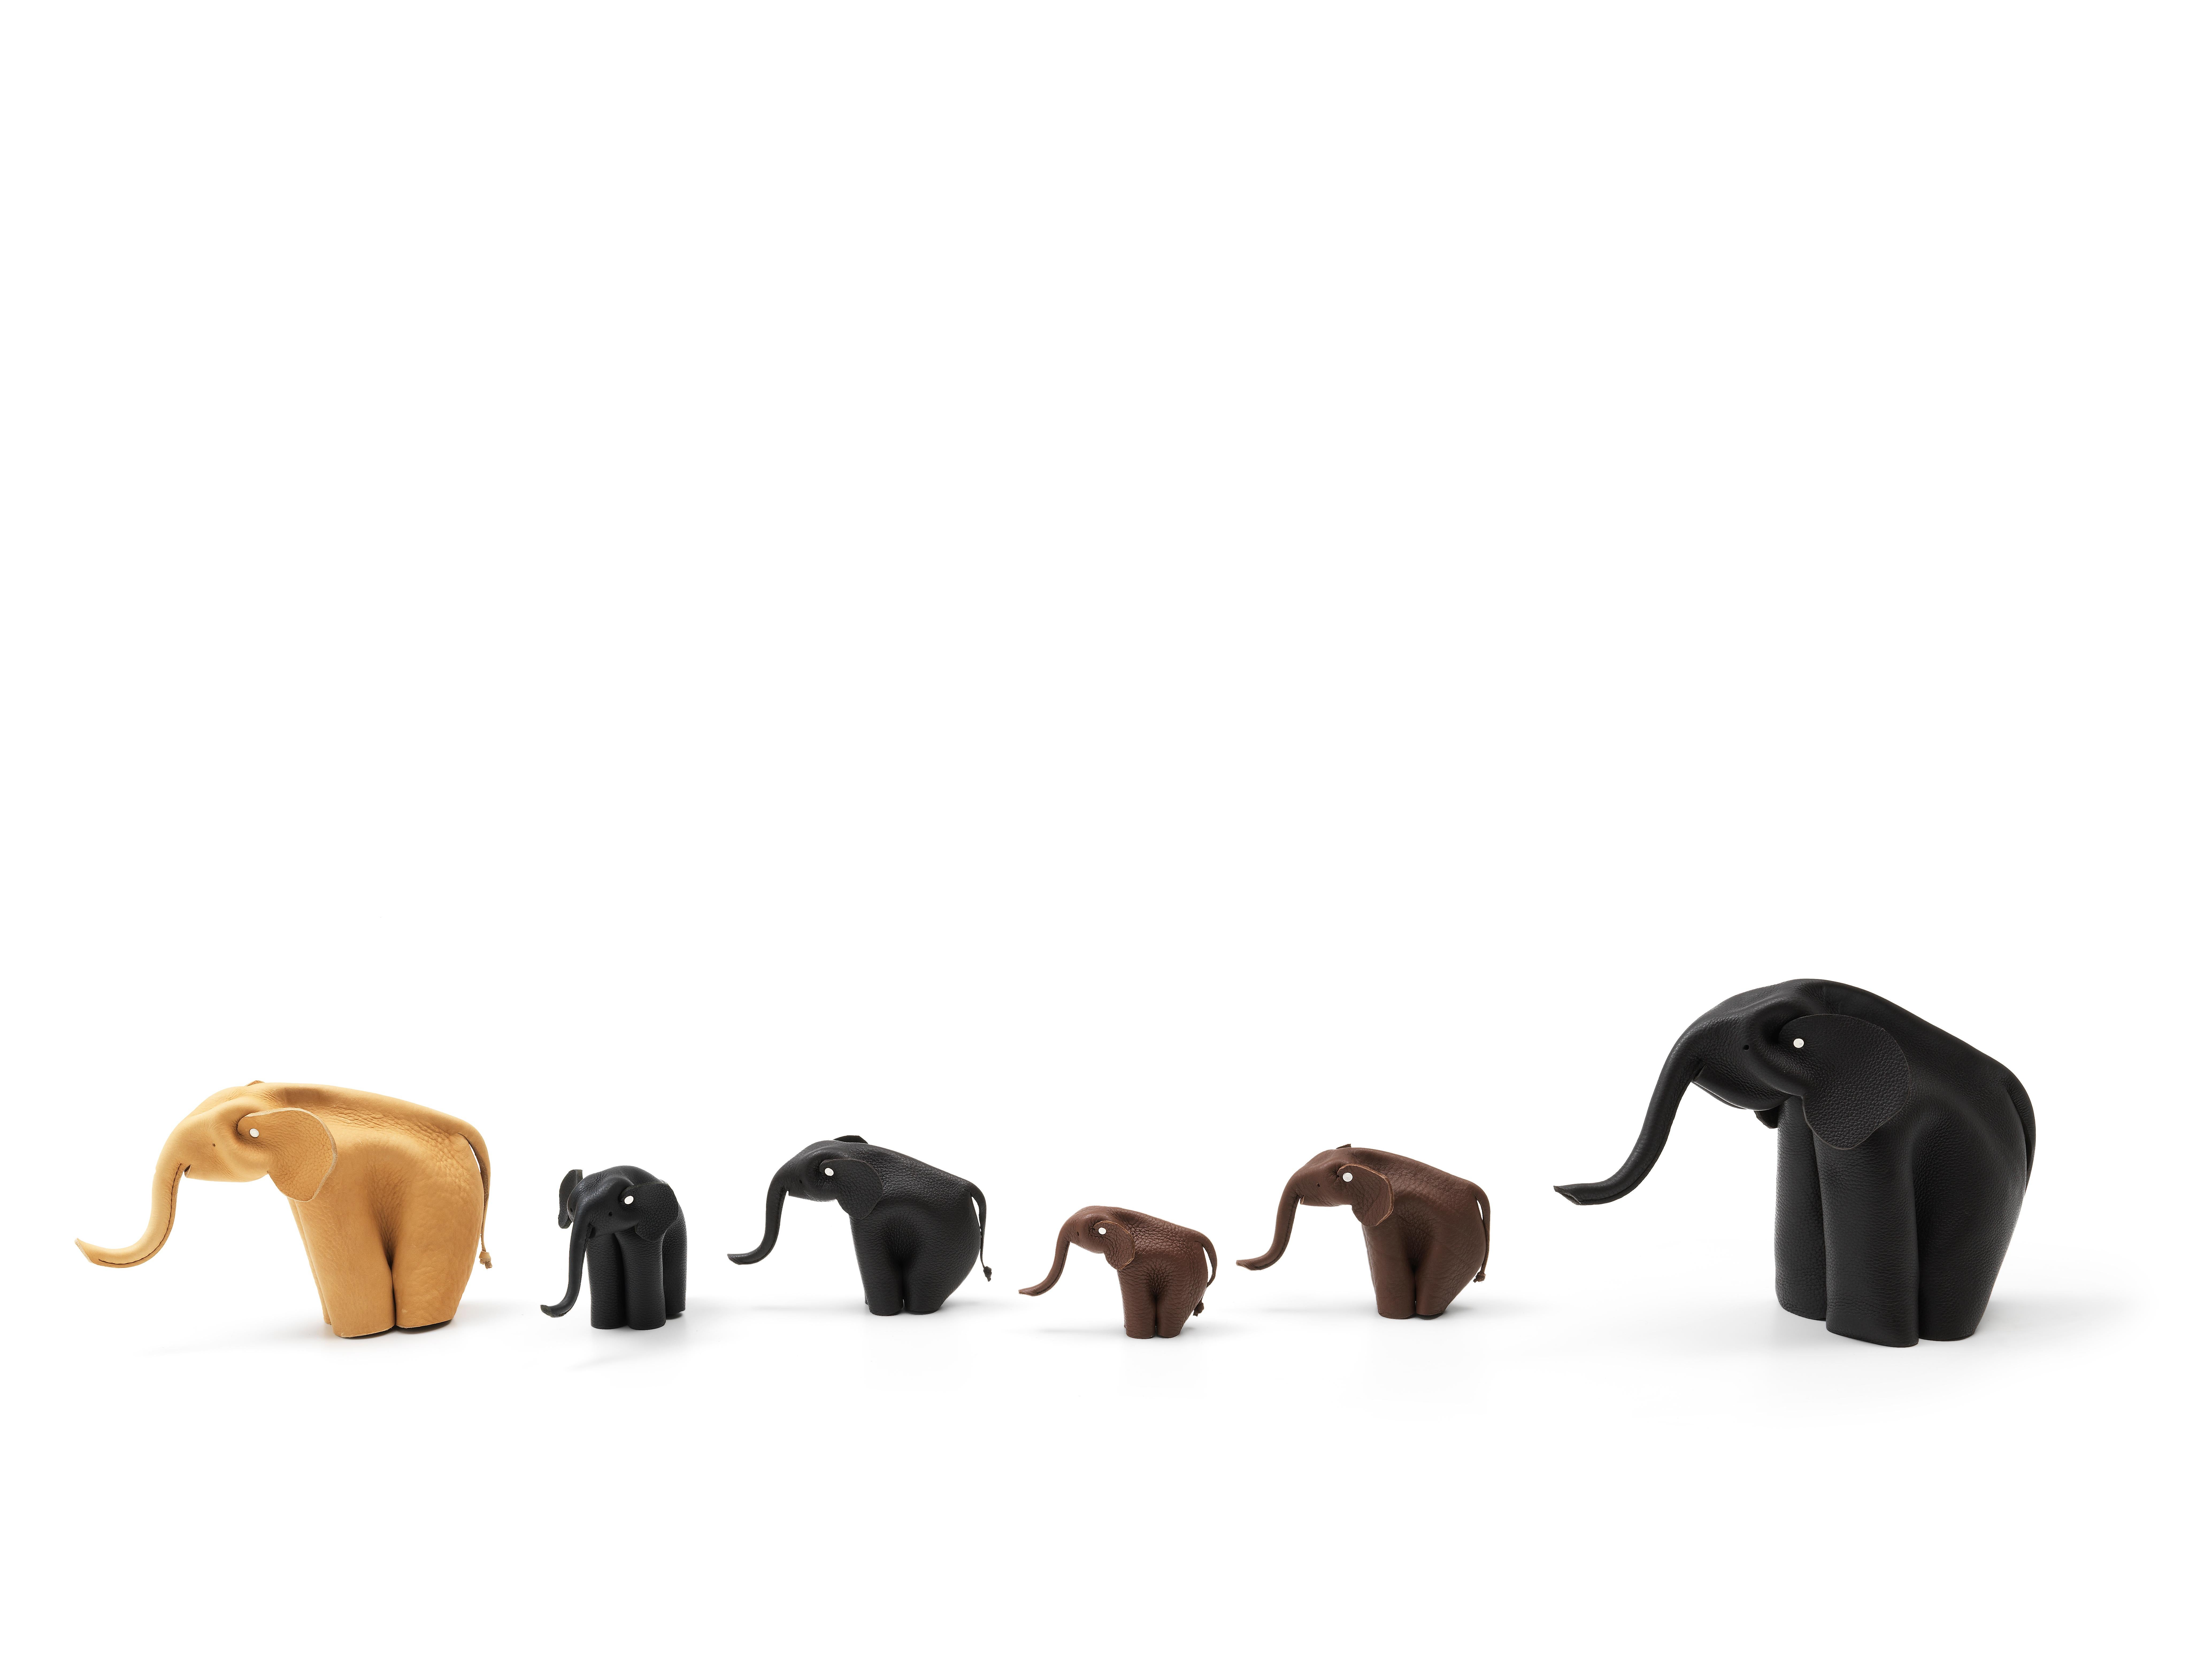 Accessoire éléphant miniature conçu par Alfredo Ha¨berli pour De Sede.